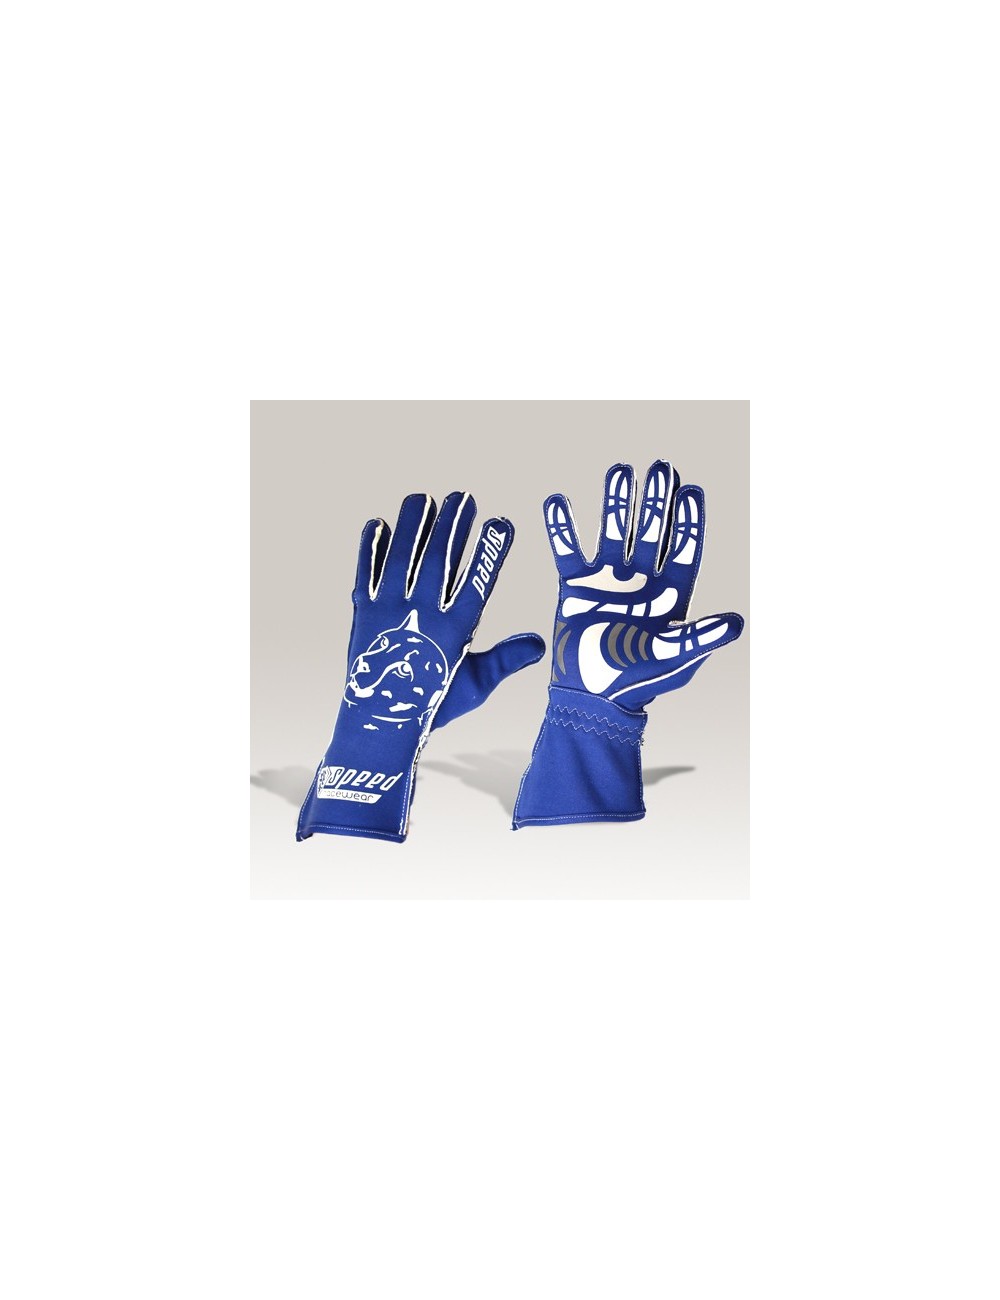 Speed Handschuhe Melbourne G-2  blau-weiß